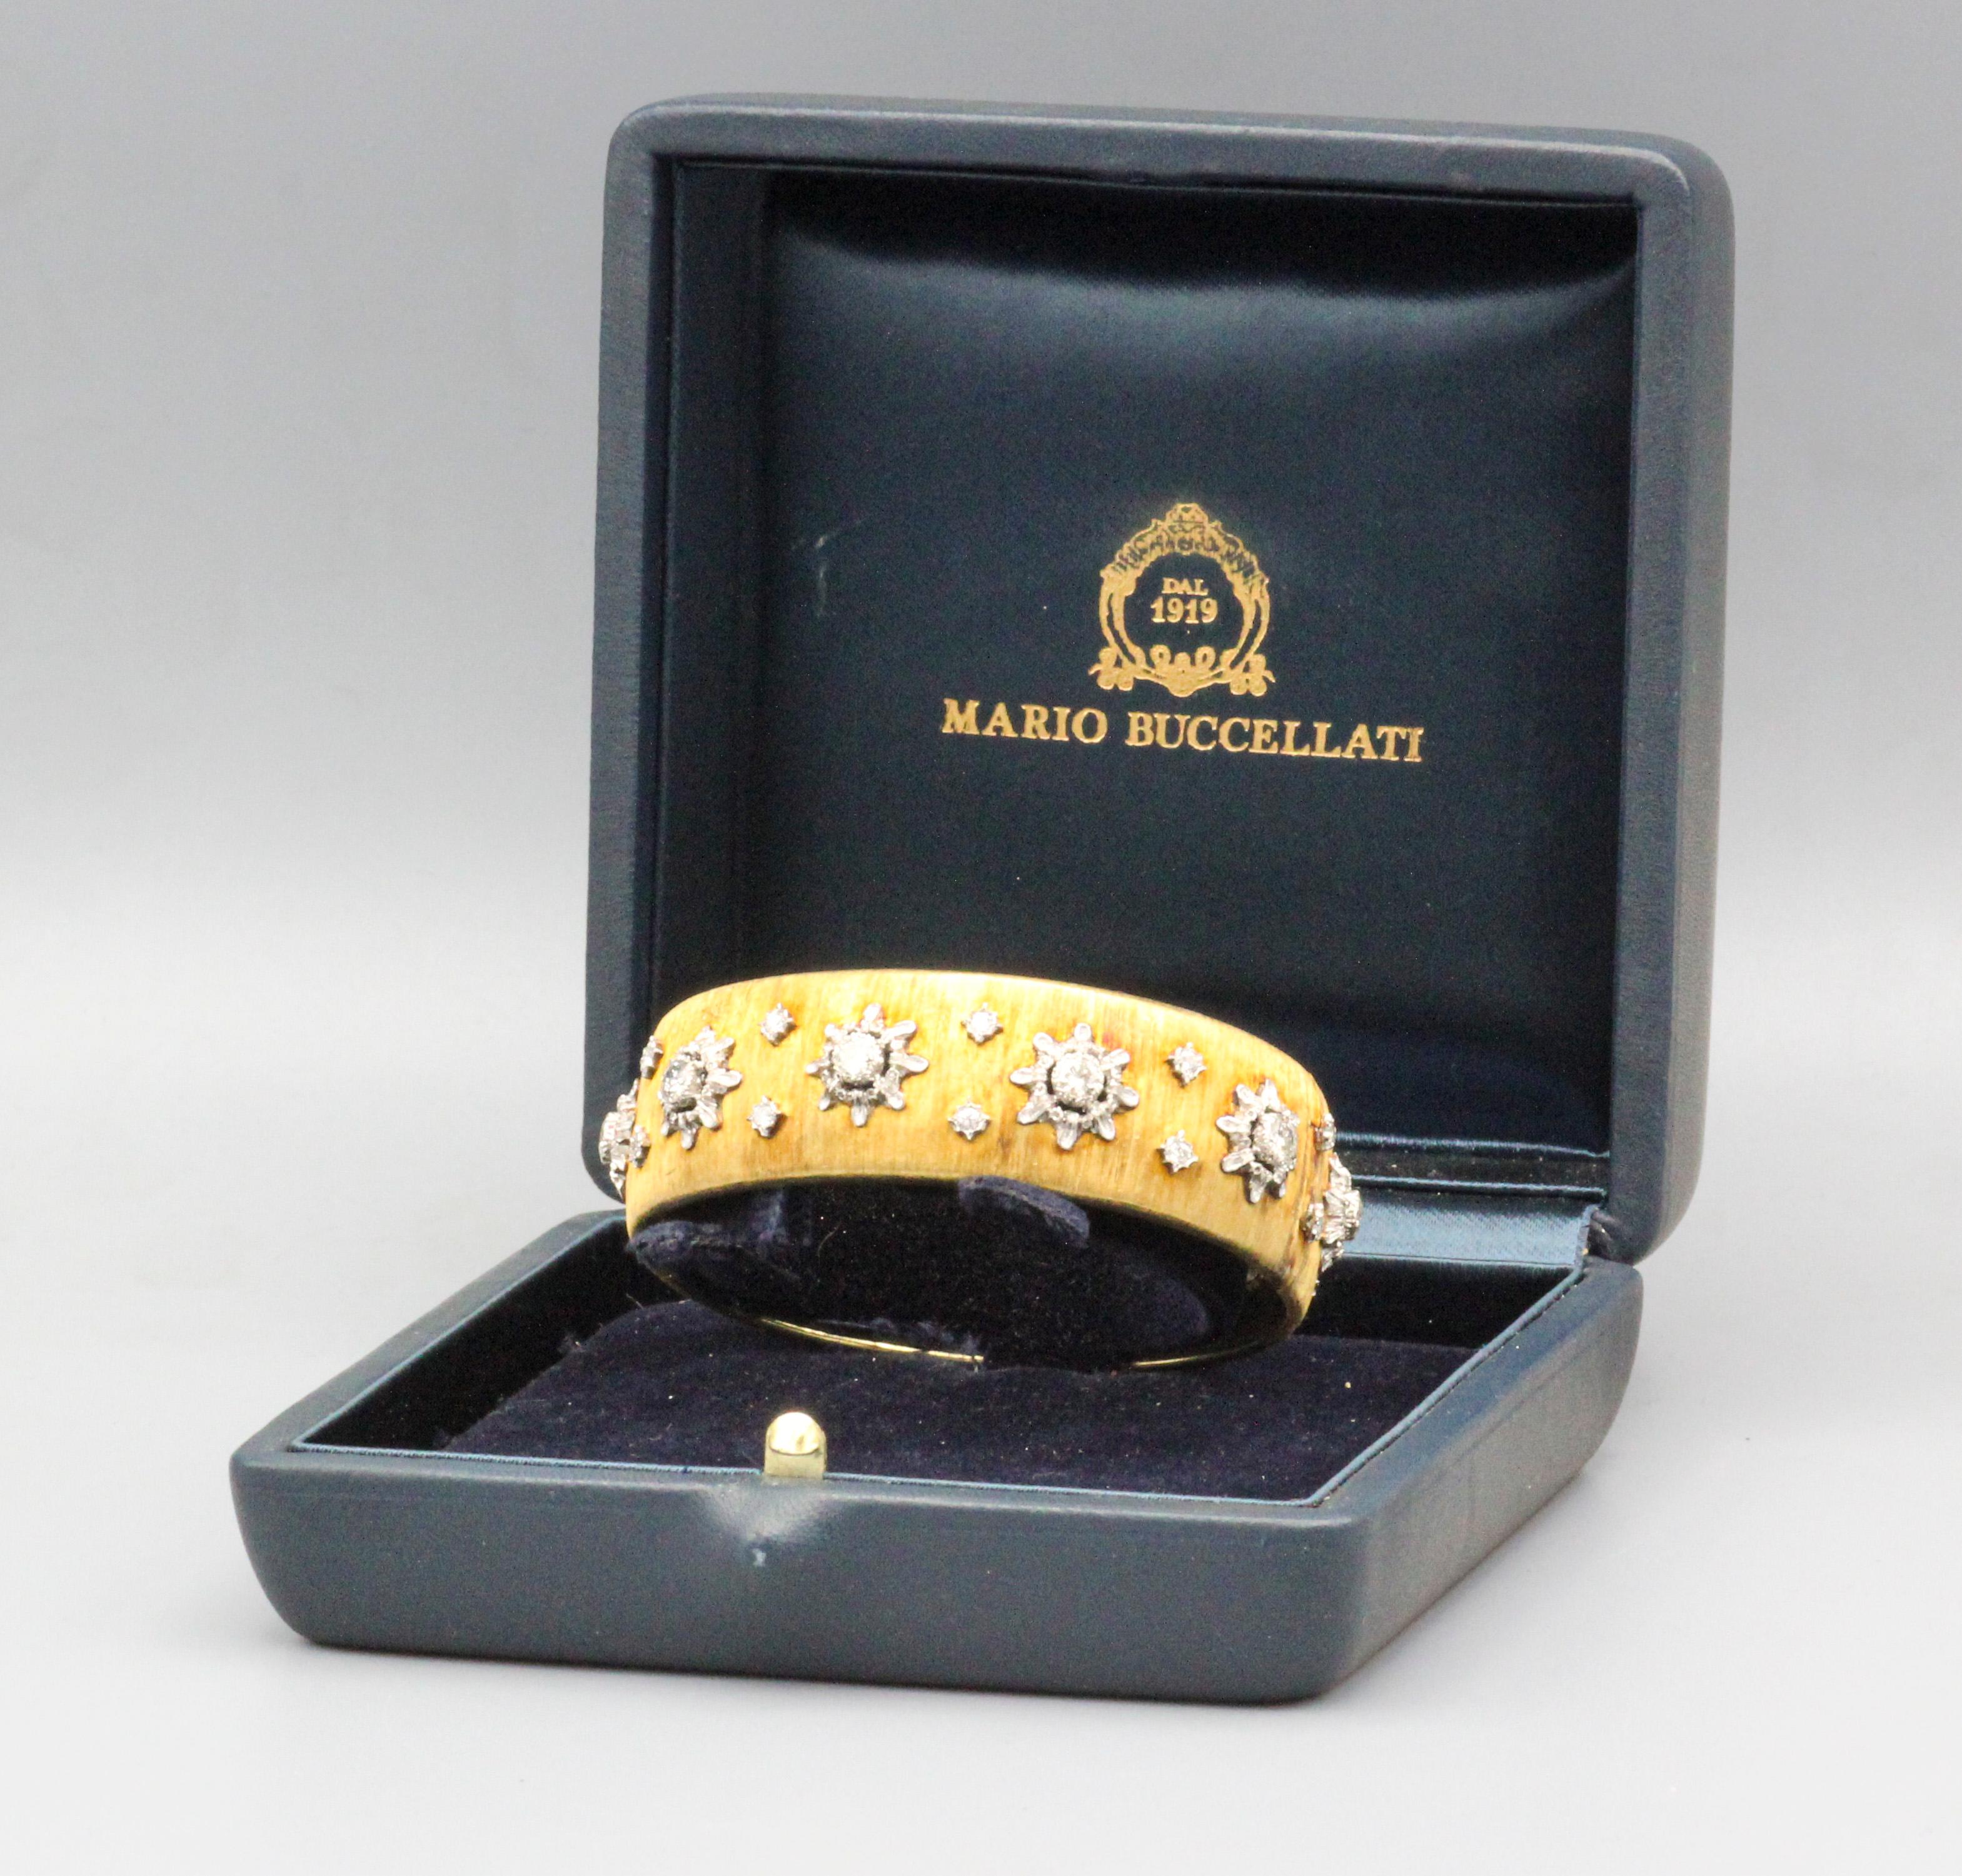 Transportez-vous dans le glamour des années 1970 avec cet exquis bracelet-bracelet vintage de Buccellati en diamant et or bicolore 18 carats. Réalisée avec une attention méticuleuse aux détails par la célèbre maison de joaillerie italienne, cette